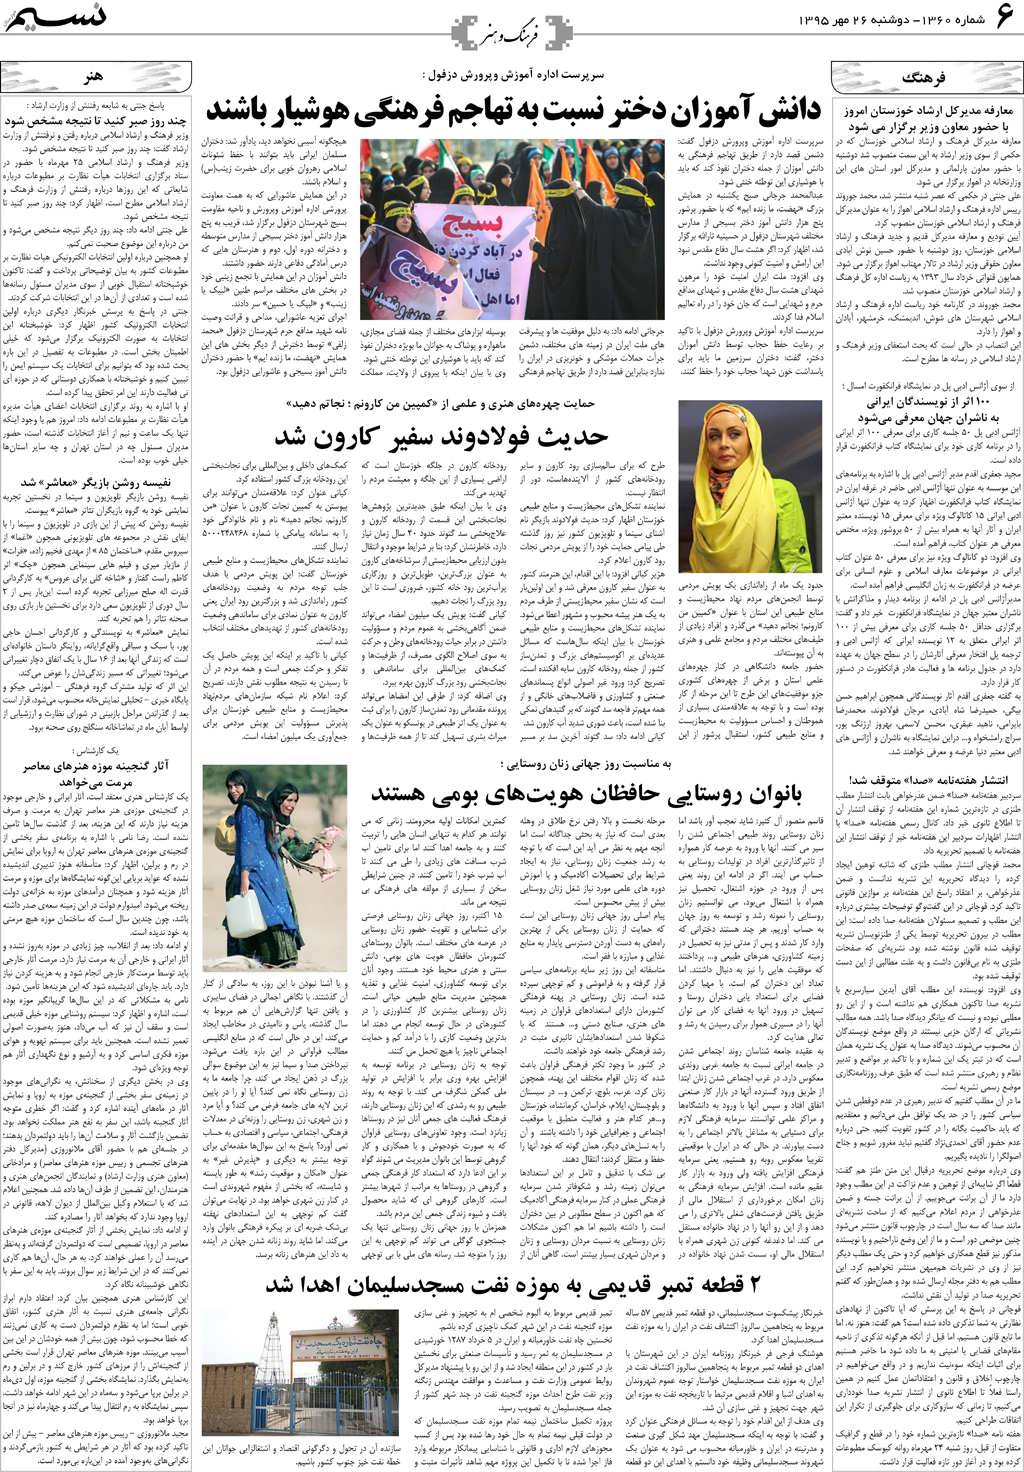 صفحه فرهنگ و هنر روزنامه نسیم شماره 1360